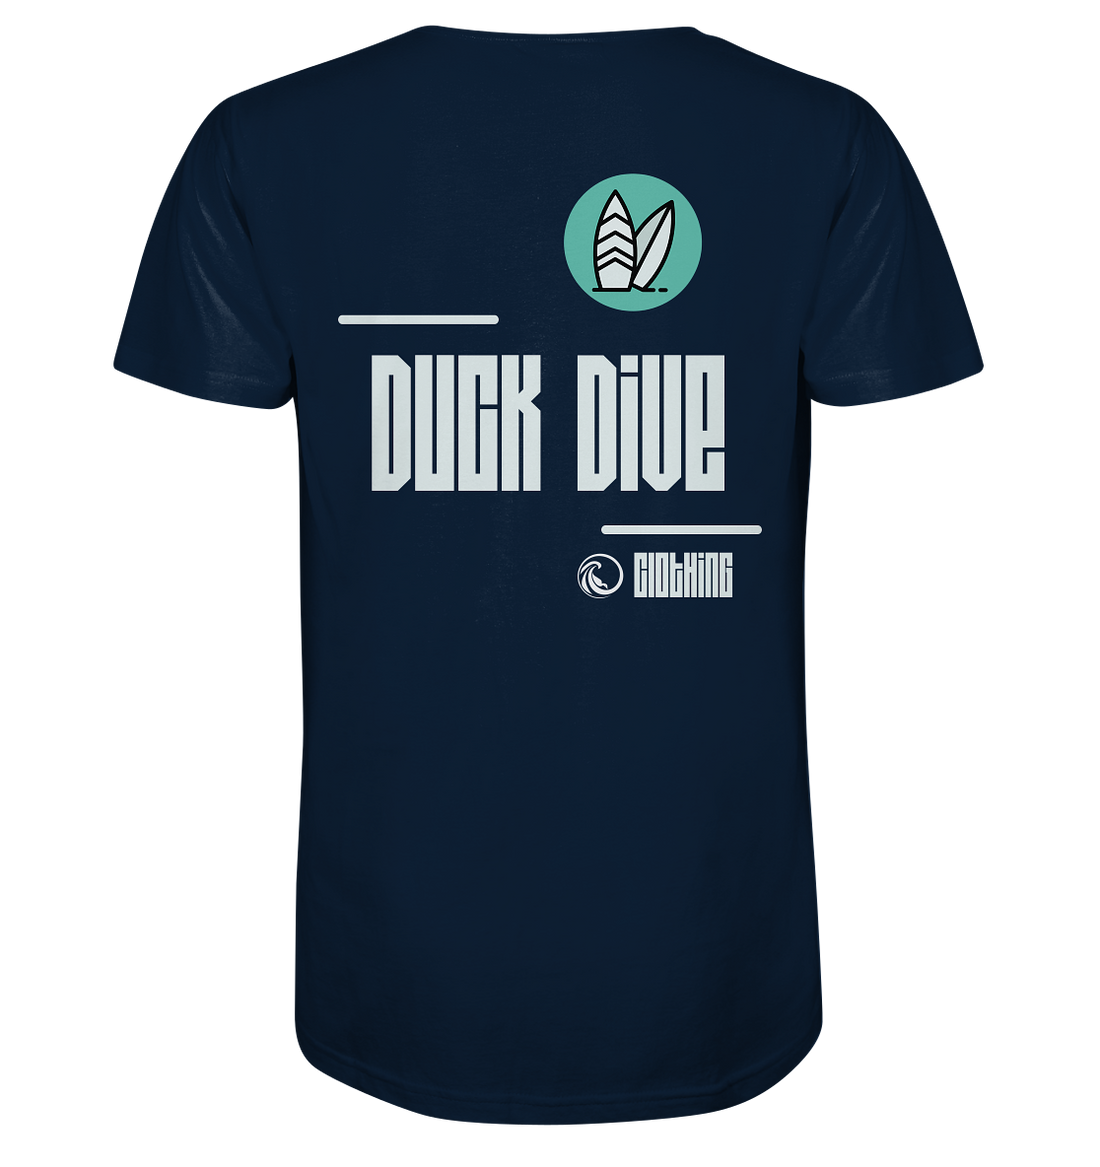 Shirt - Two Boards - Organic Shirt - Duck Dive Clothing